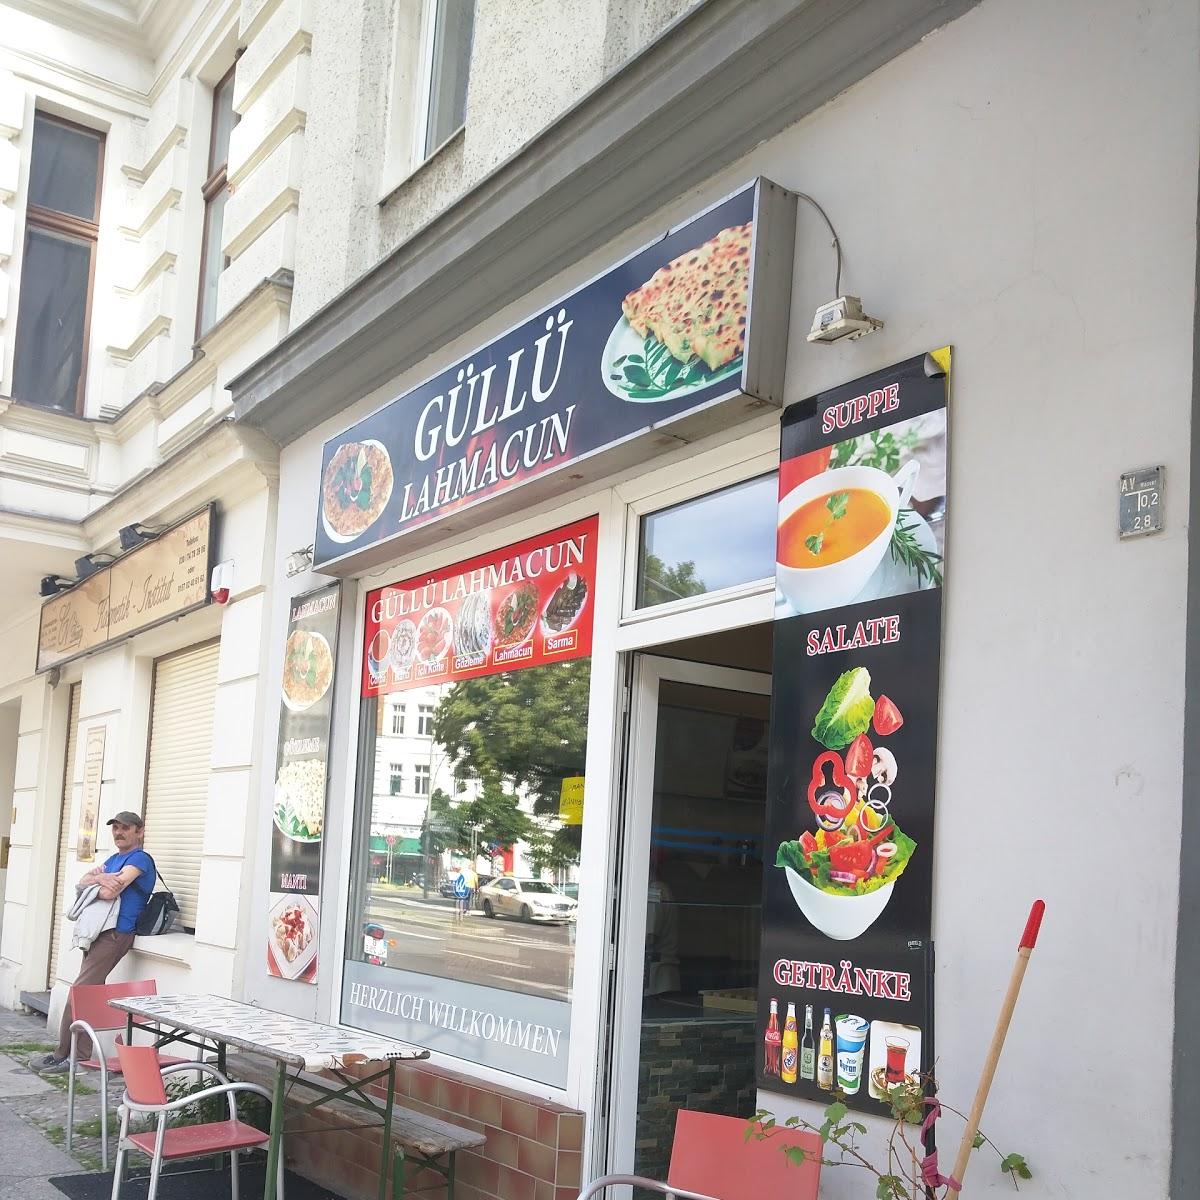 Restaurant "Güllü Lahmacun" in Berlin